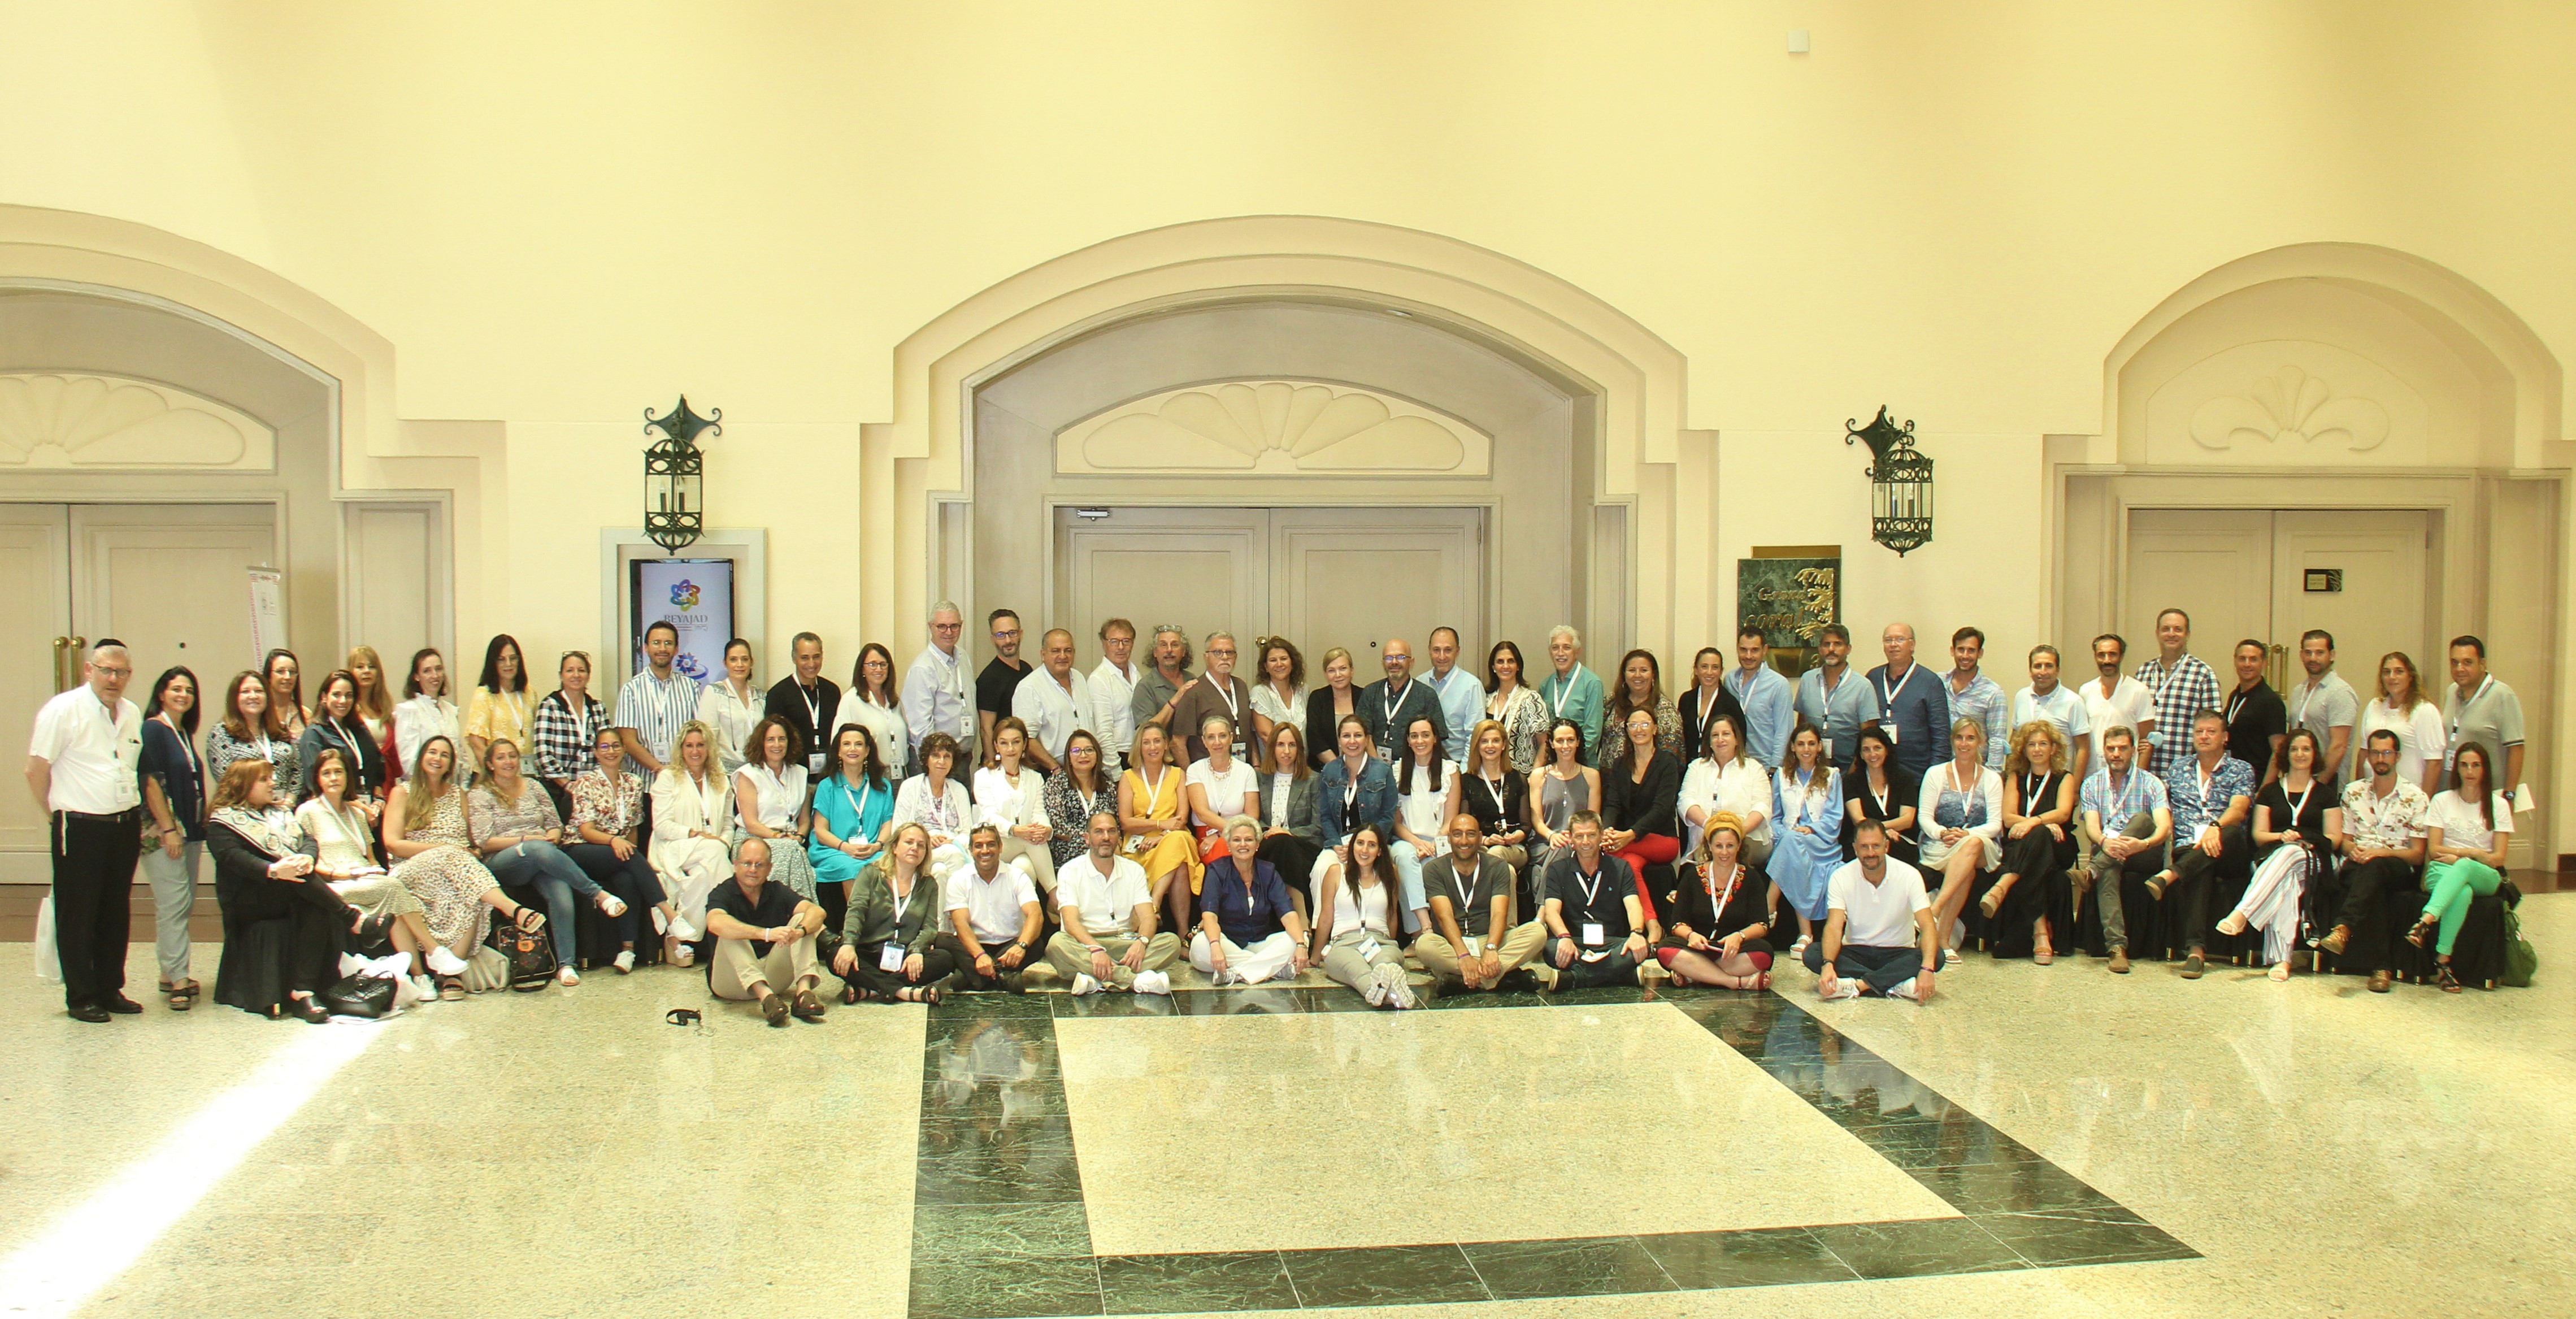 Cancun conference participants